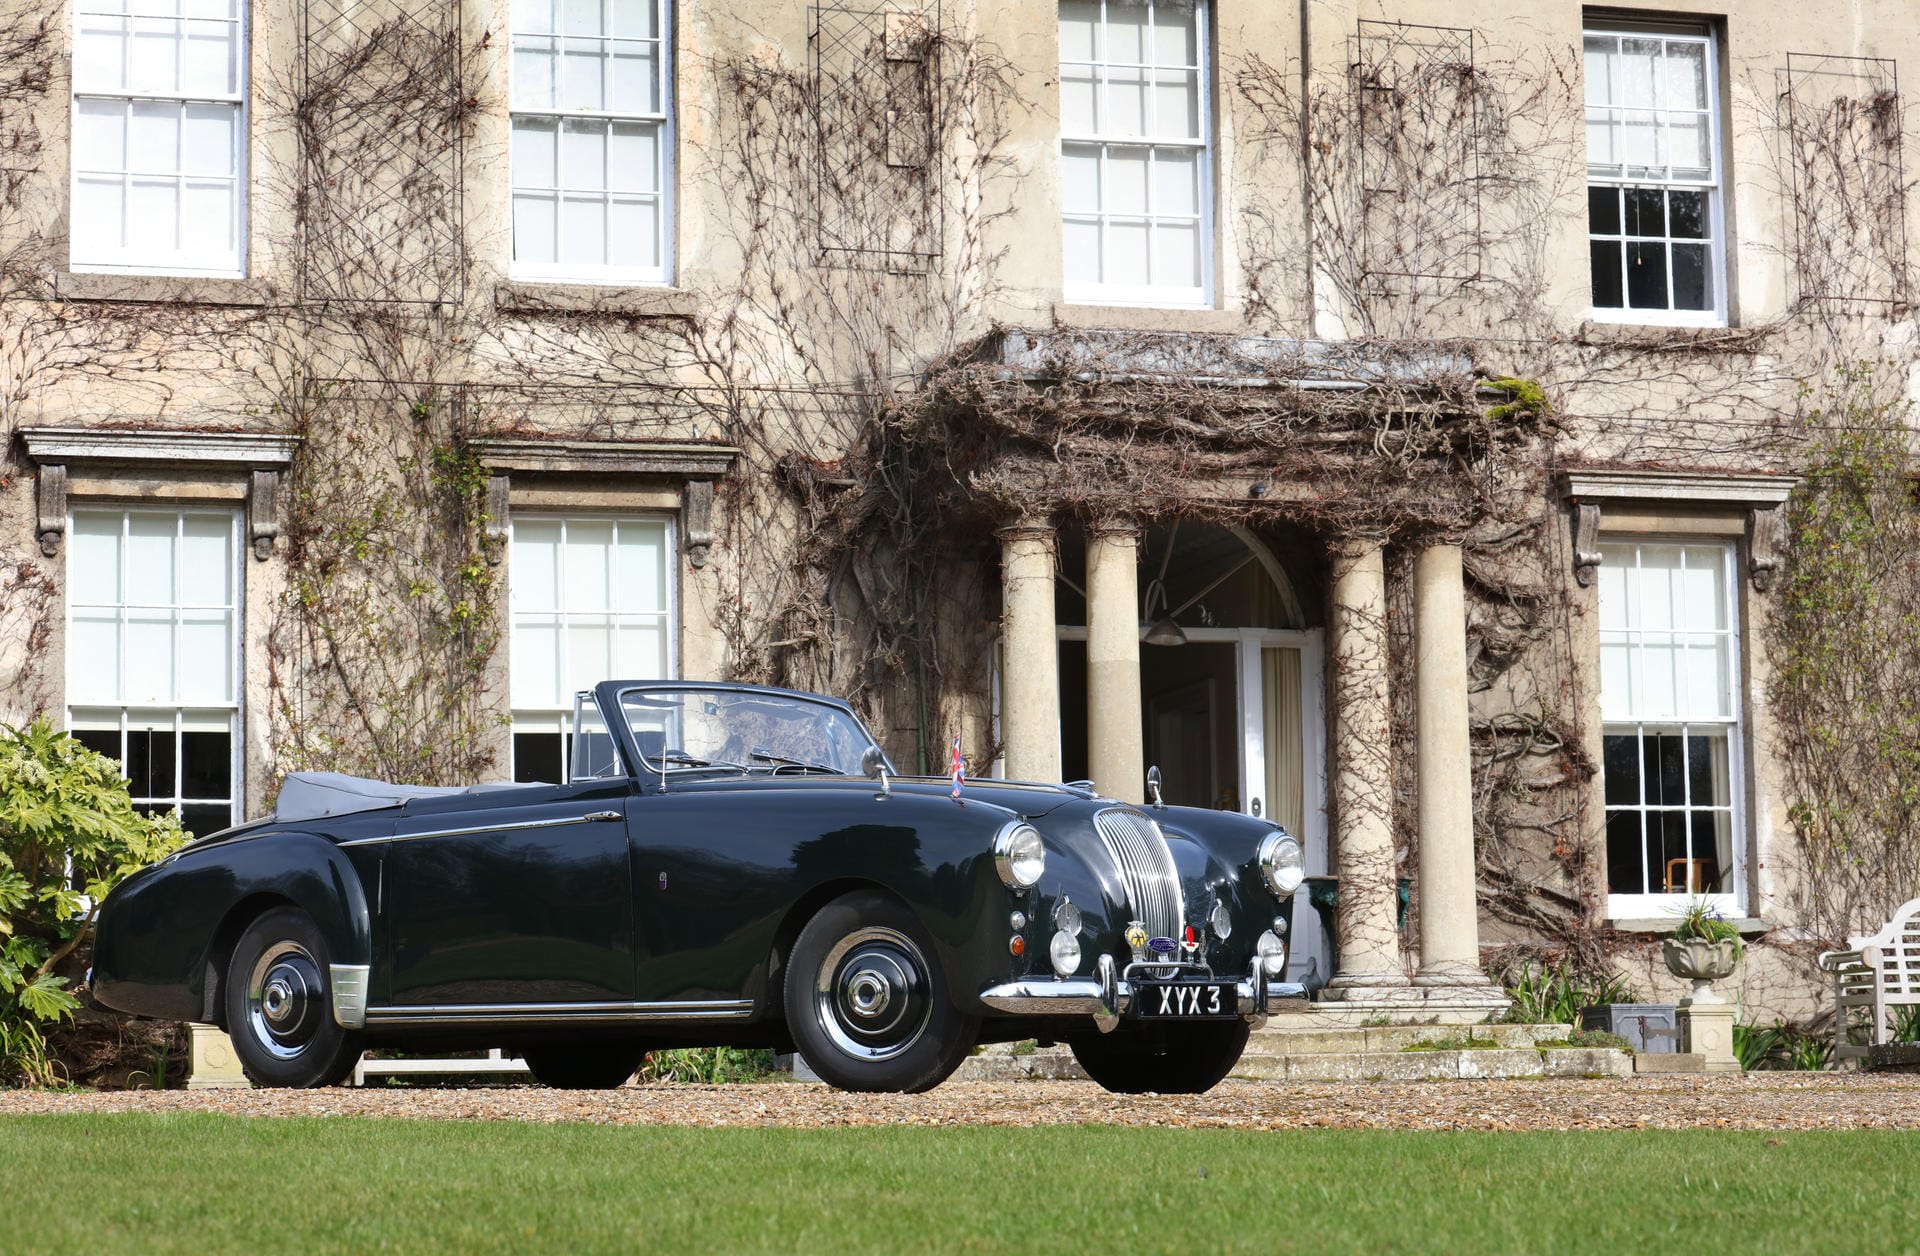 Im April 2016 kommt ein legendäres Aston Martin Lagonda 3 Litre Drophead Coupe zur Auktion. Kein Geringerer als Prinz Philip, seit 1947 Gemahl der britischen Königen, gehört zu den Vorbesitzern des Autos.